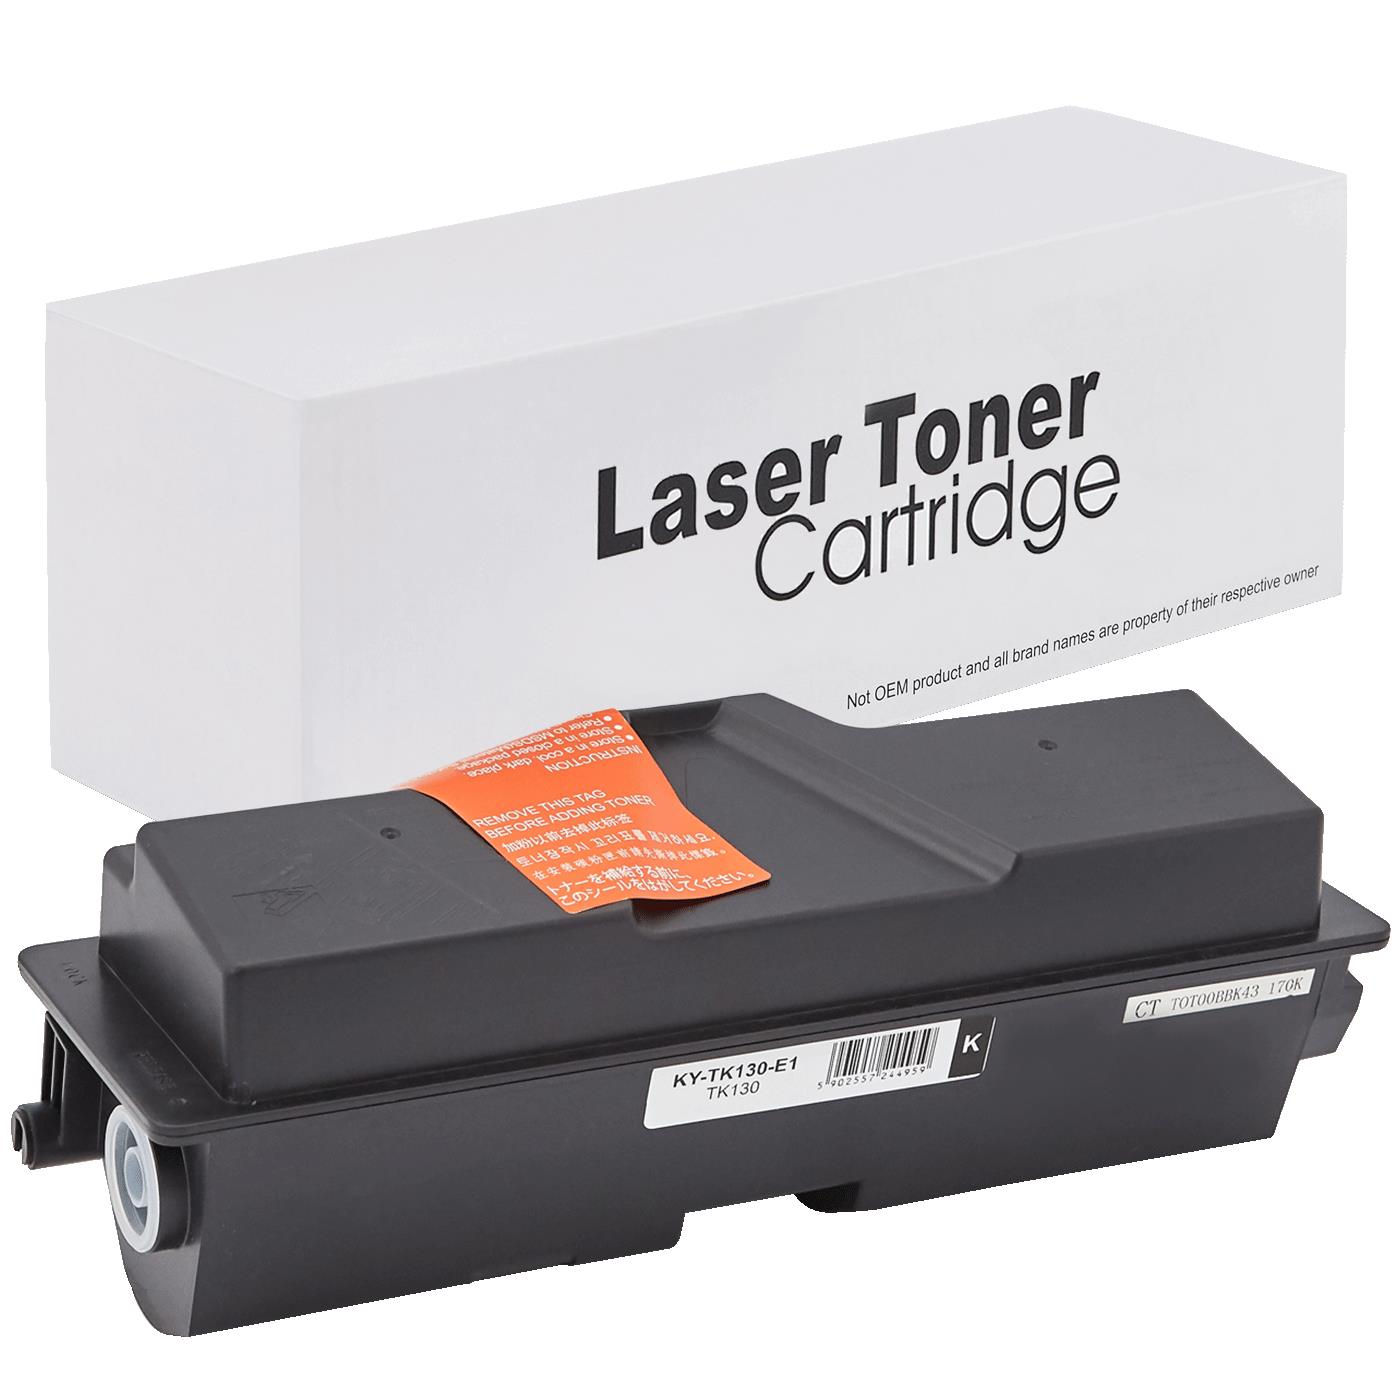 съвместима тонер касета за принтери и печатащи устройства на Kyocera Mita FS 1300 Toner KY-TK130 | TK130. Ниски цени, прецизно изпълнение, високо качество.